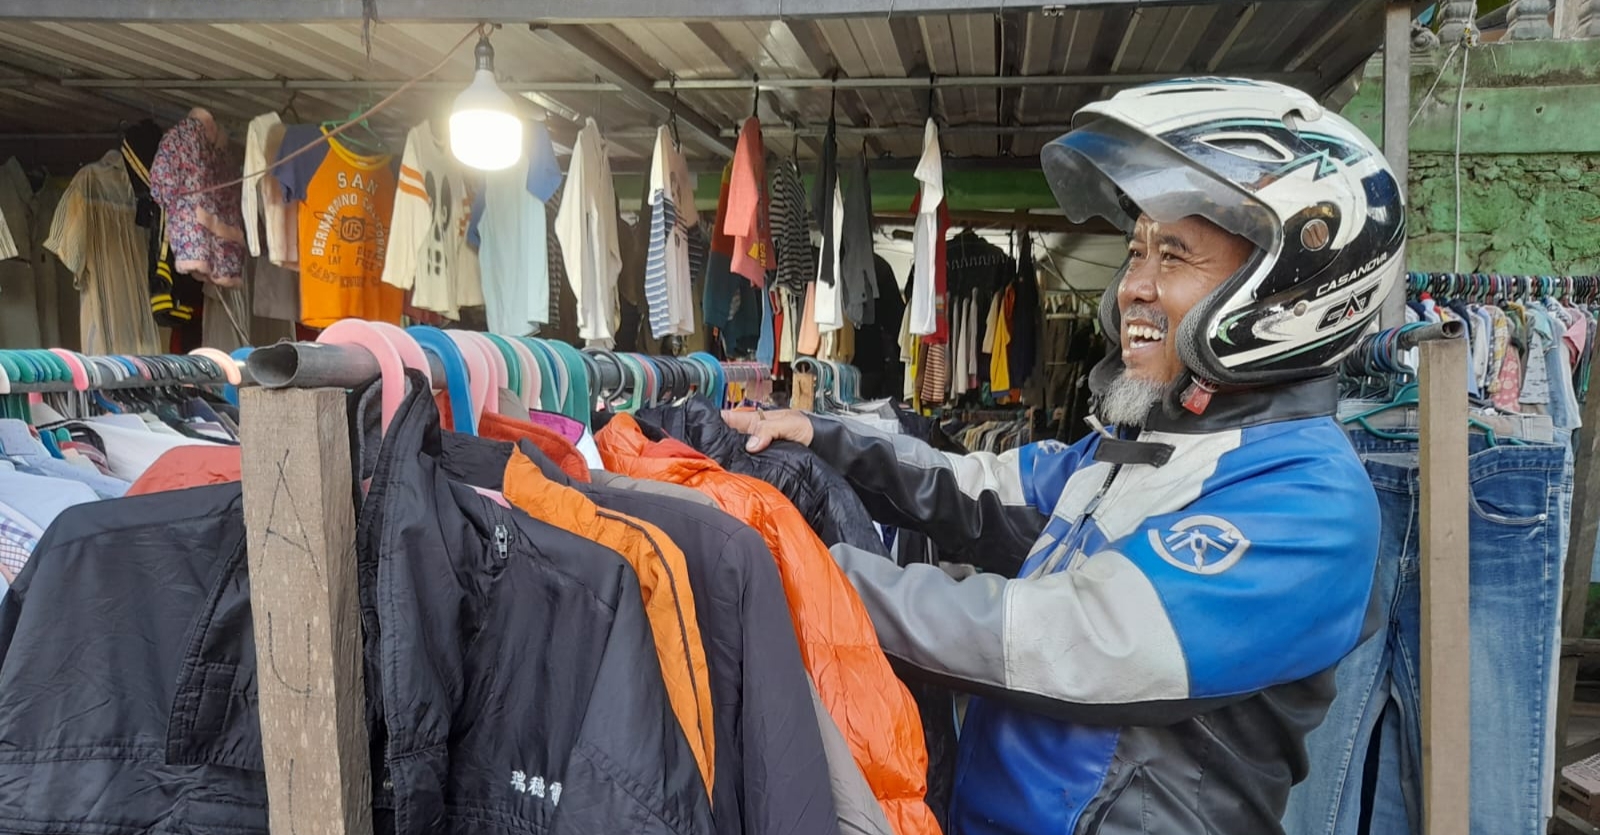 Pelarangan Baju Bekas Impor, Pedagang: Carikan Solusi Sebelum Buat Kebijakan